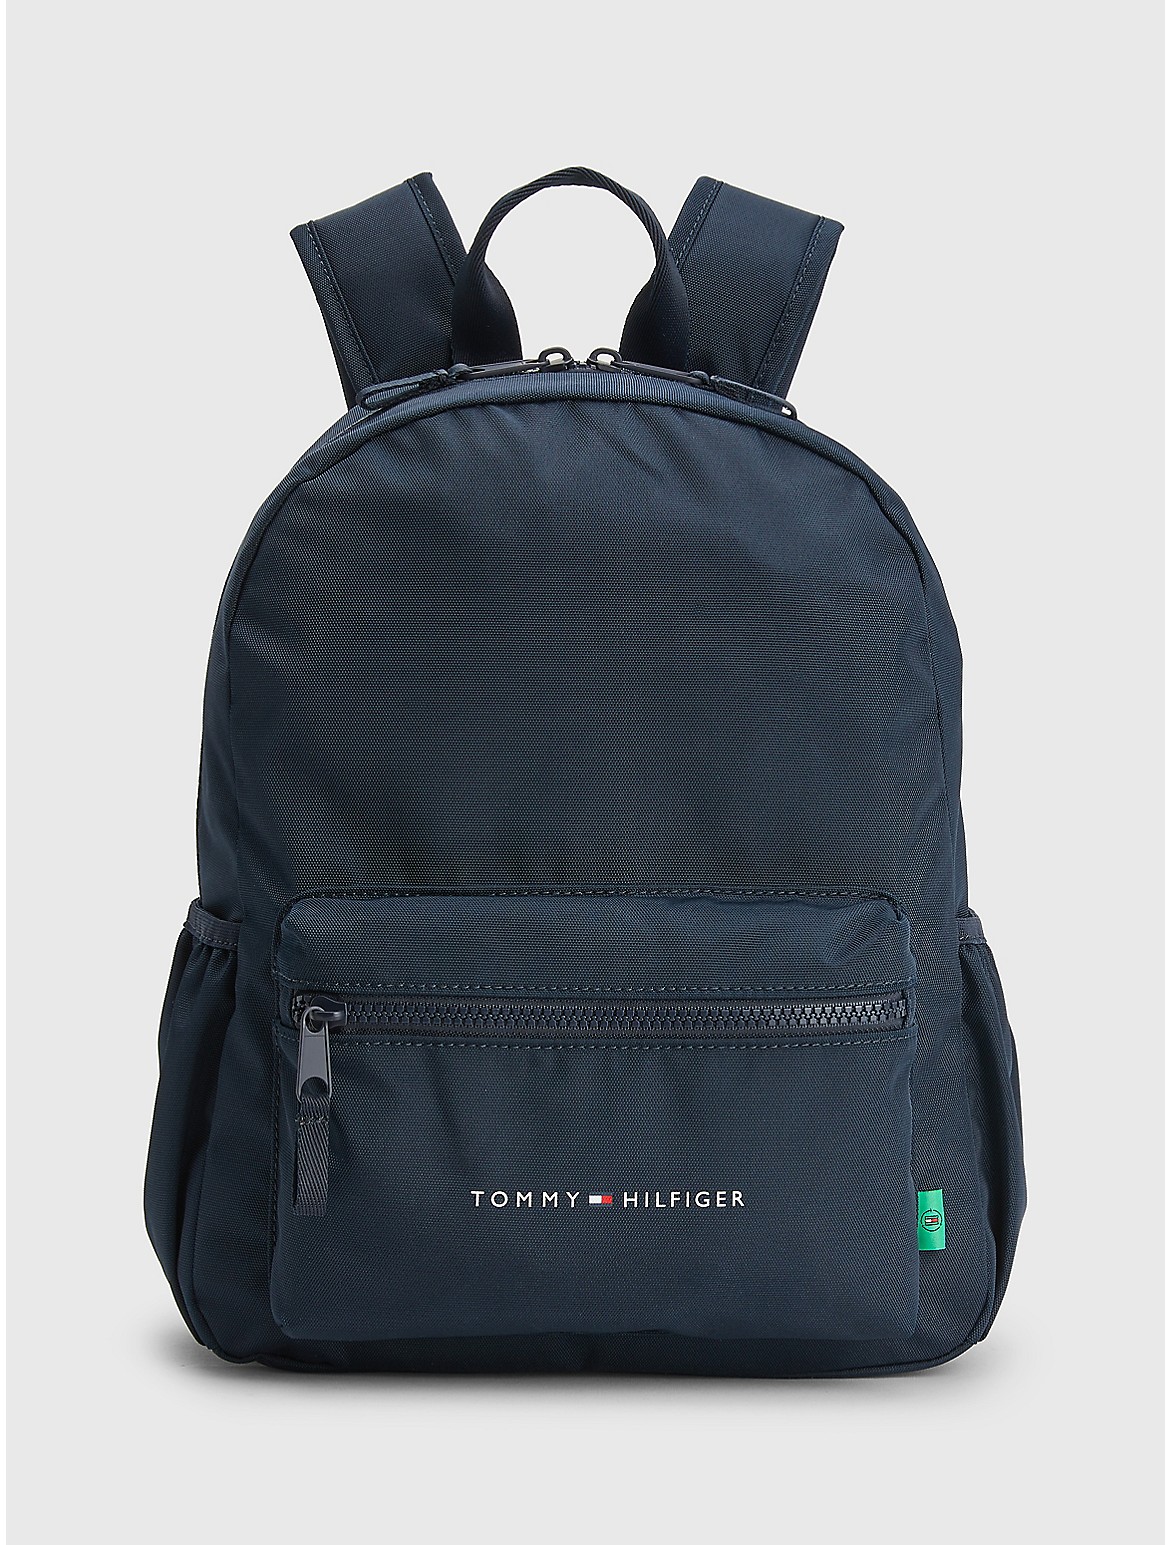 Tommy Hilfiger Kids' TH Flag Logo Backpack - Blue